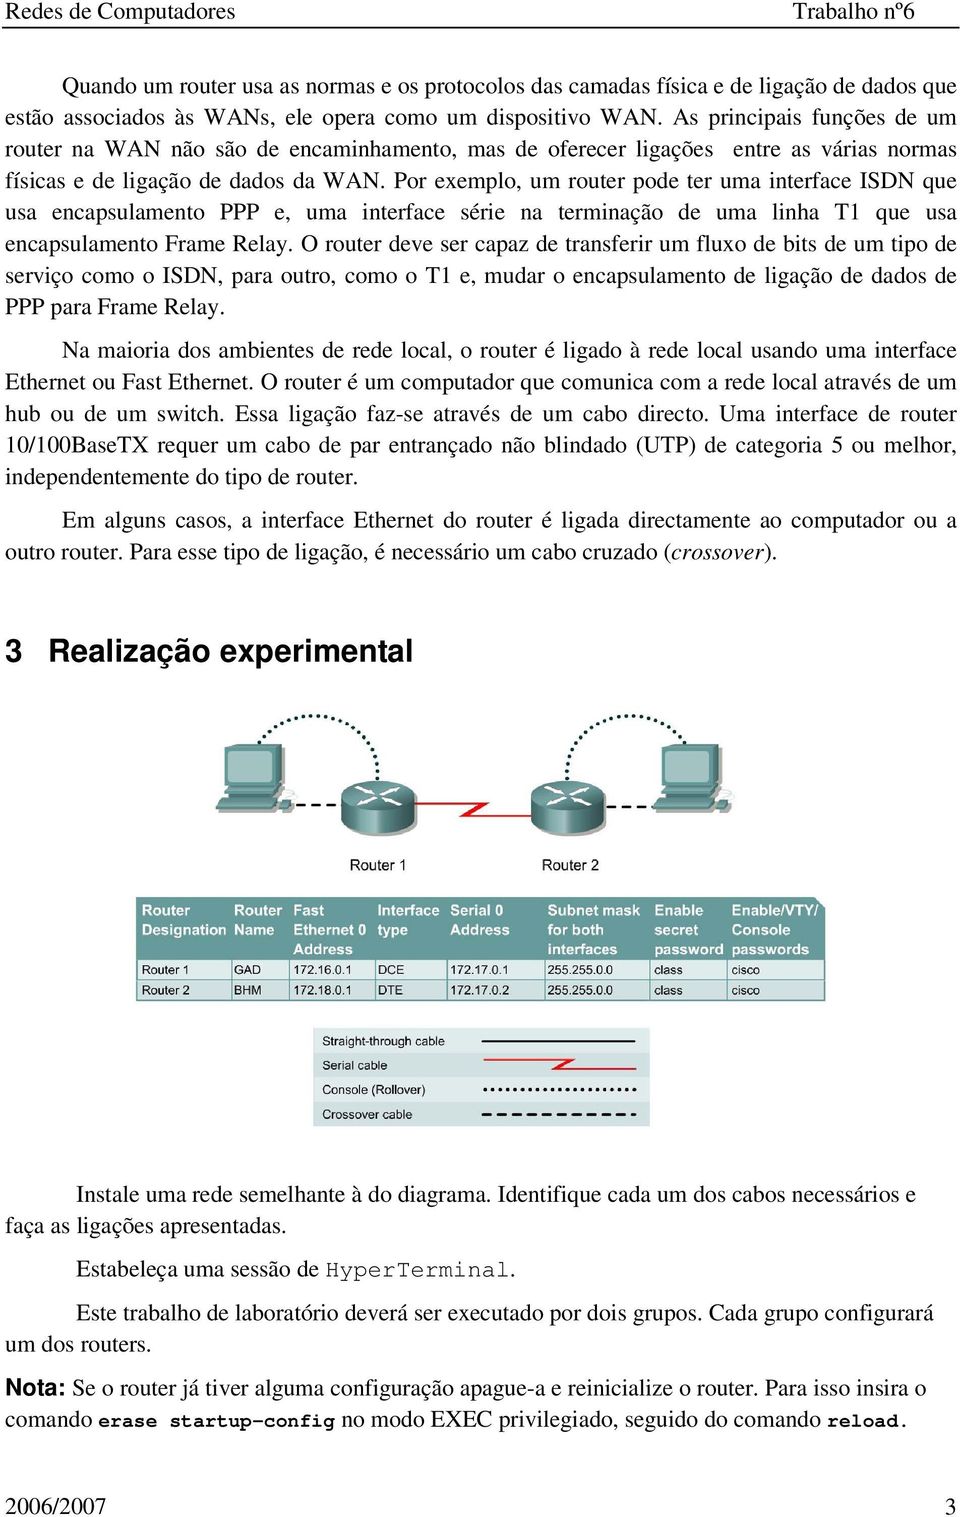 Por exemplo, um router pode ter uma interface ISDN que usa encapsulamento PPP e, uma interface série na terminação de uma linha T1 que usa encapsulamento Frame Relay.